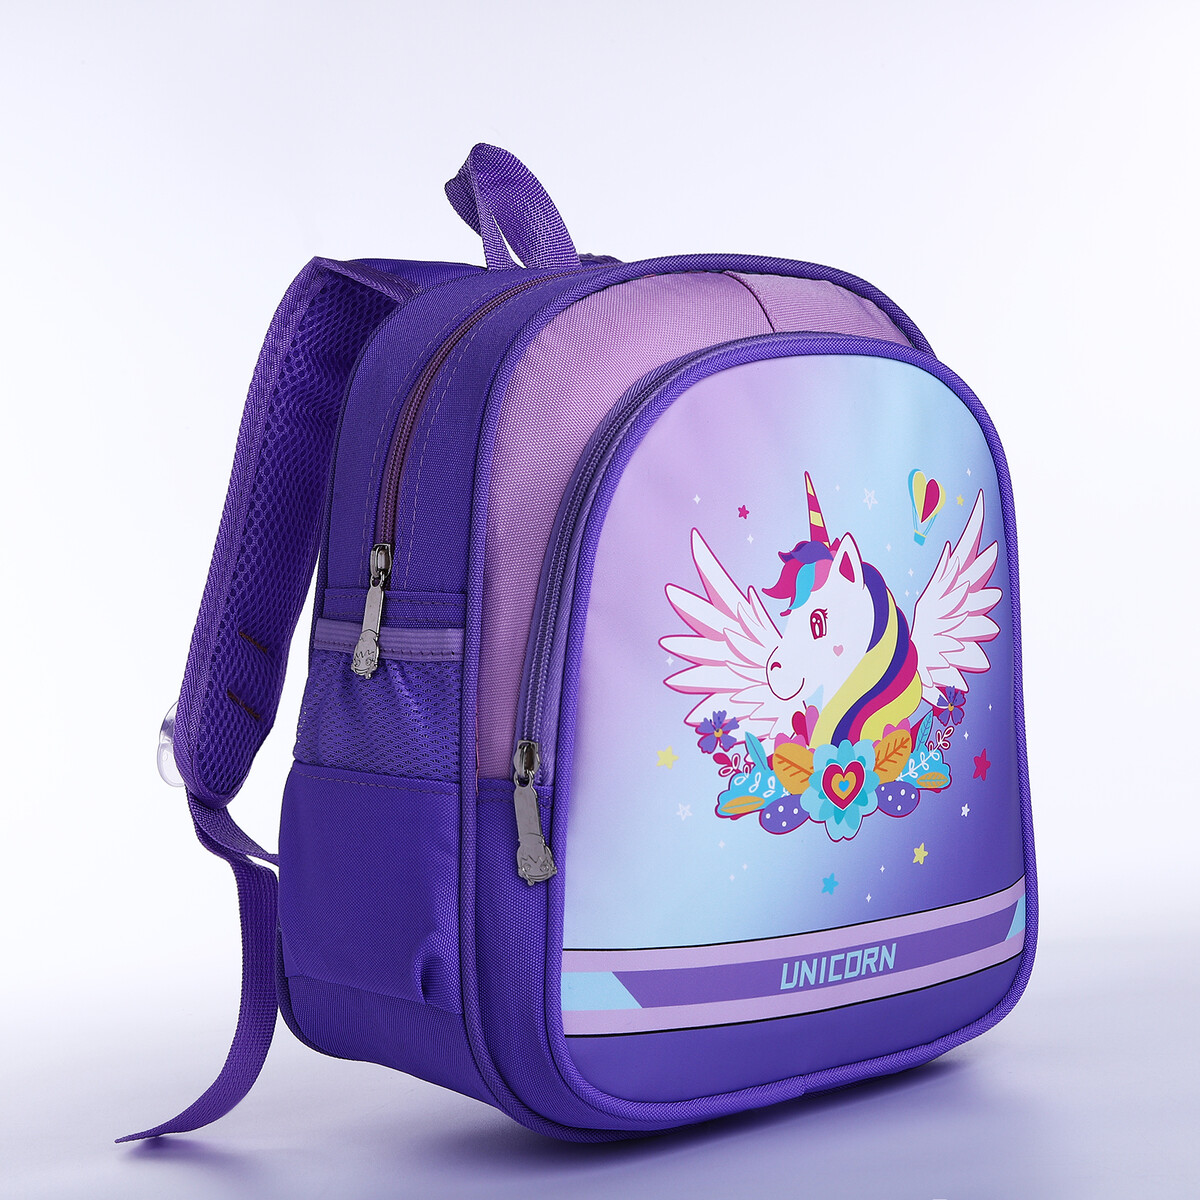 Рюкзак детский на молнии, 3 наружных кармана, цвет фиолетовый рюкзак школьный из текстиля на молнии 3 кармана пенал фиолетовый